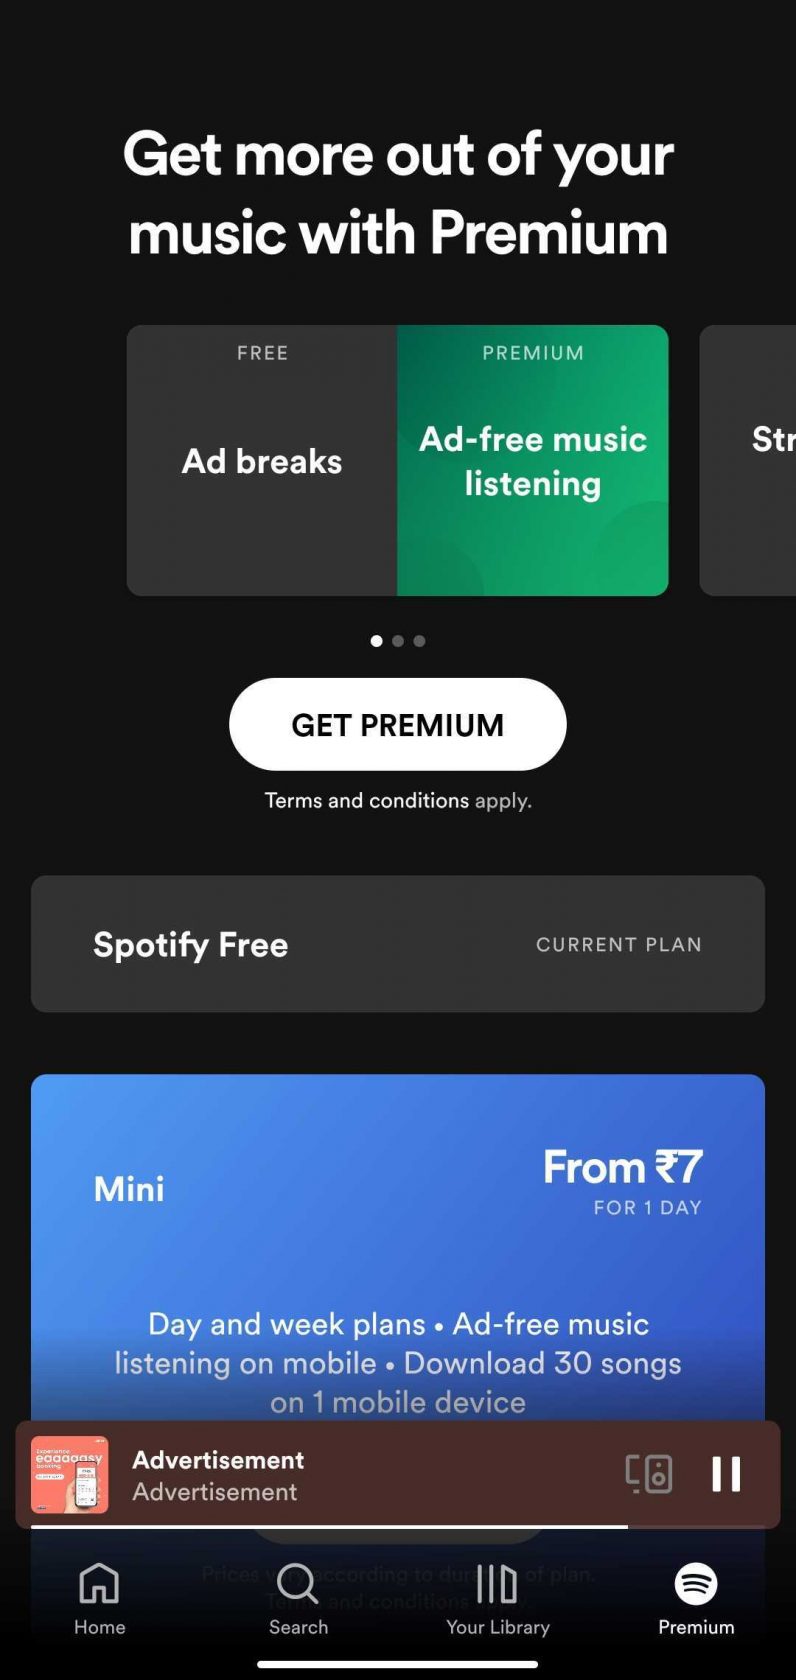 La aplicación Android de Spotify tiene enlaces a su sitio web para comprar suscripciones premium.